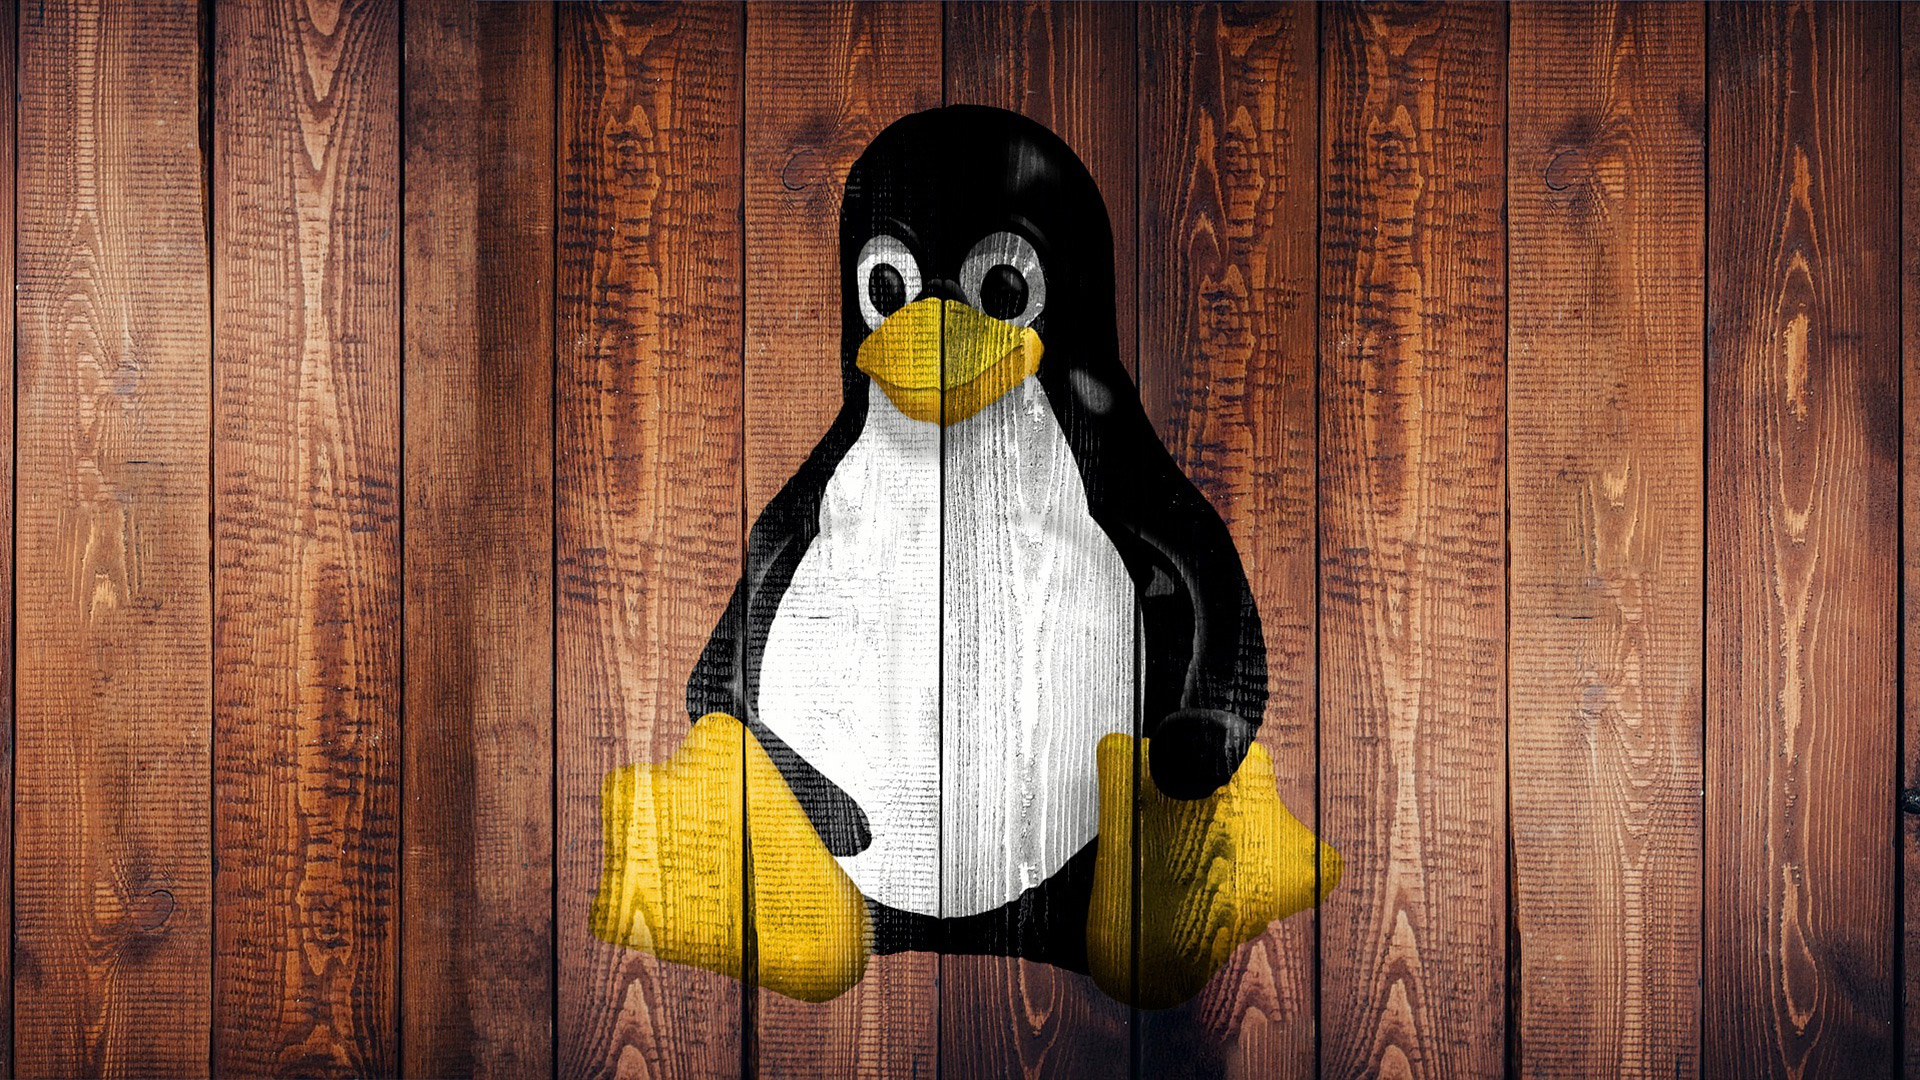 Linux nu i 3 % av stationära datorer